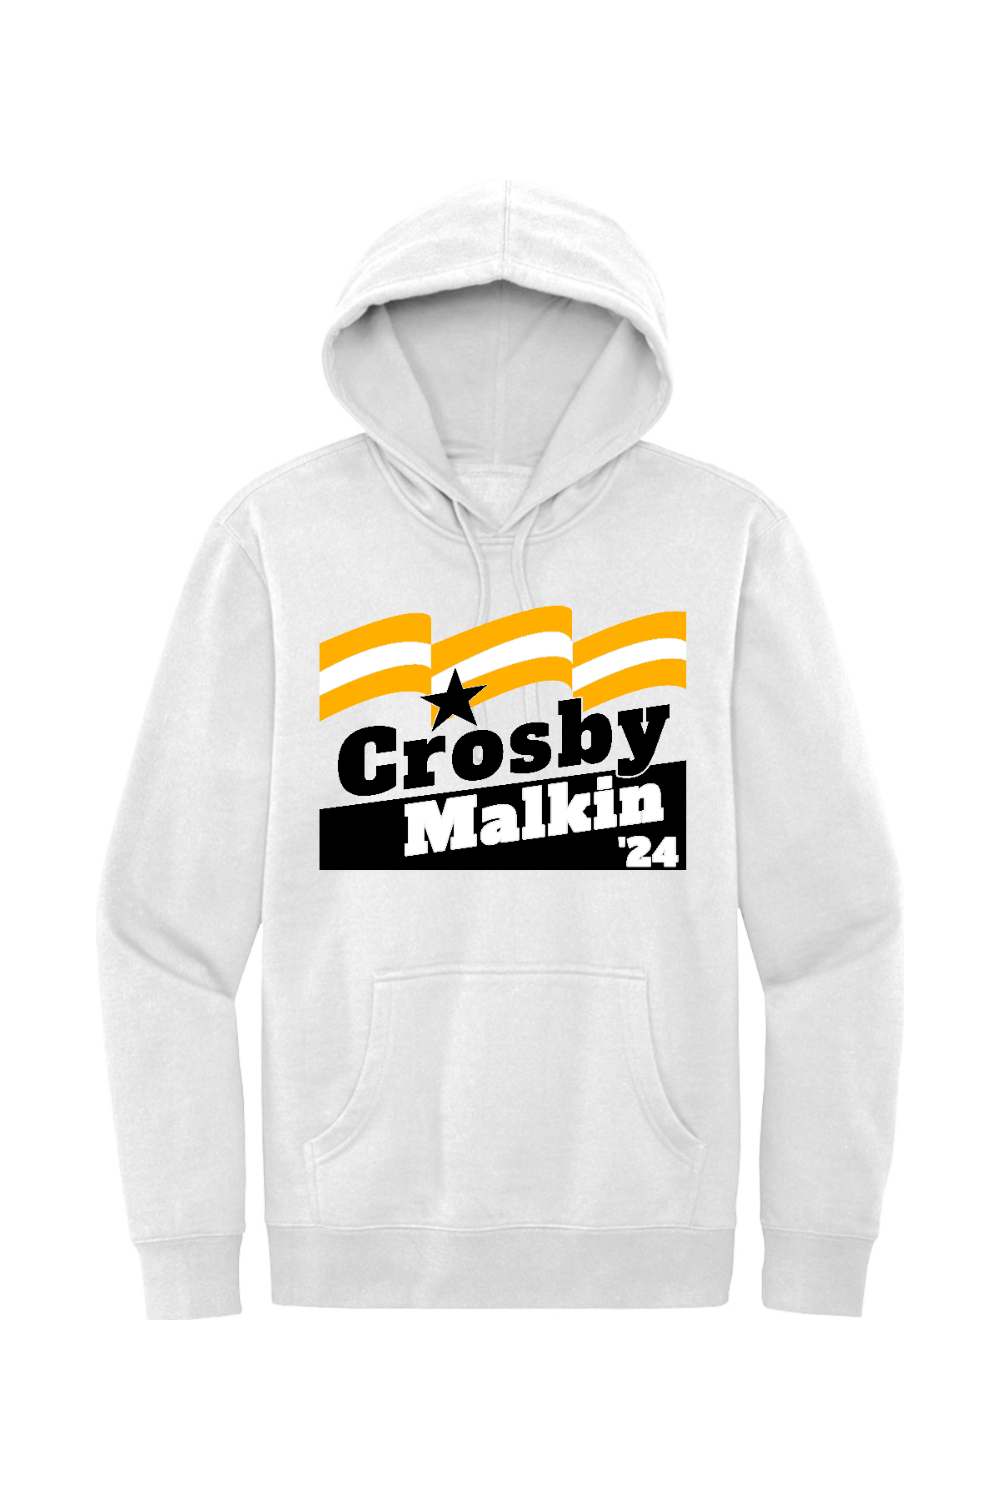 Crosby Malkin '24 - Fleece Hoodie - Yinzylvania